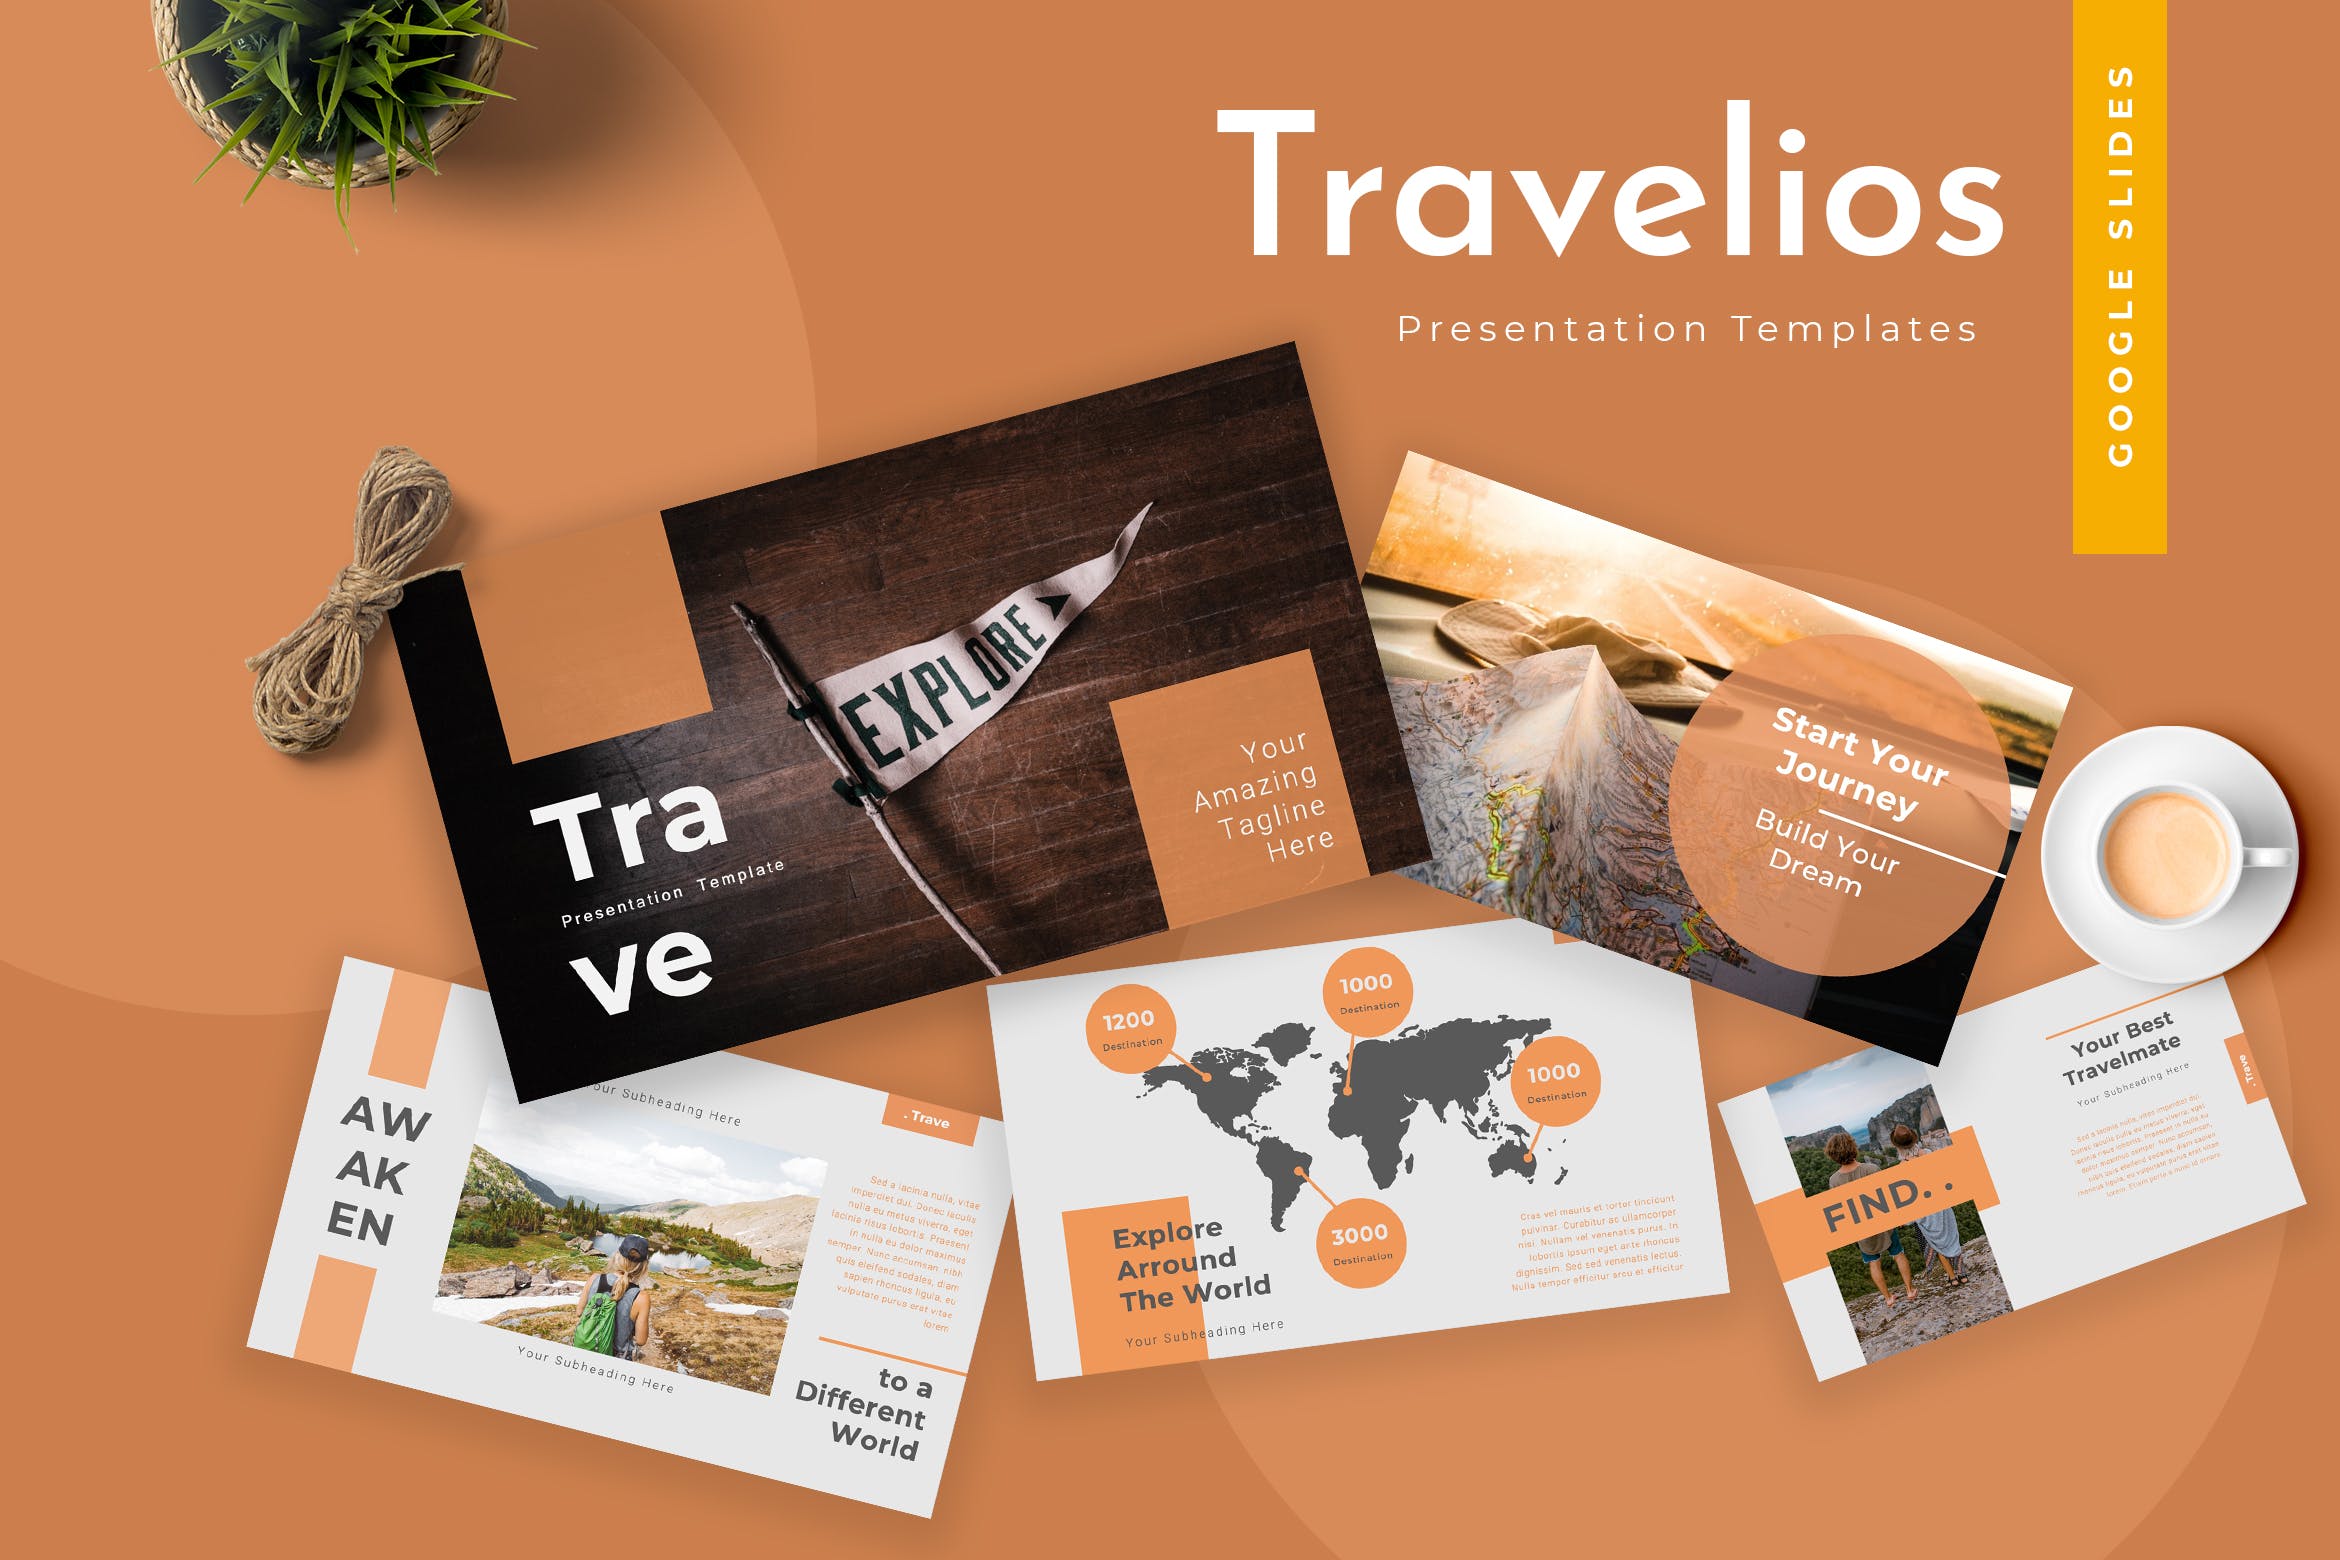 登山爱好者旅游出行类PPT幻灯片模板下载Travelios Google Slides Presentation